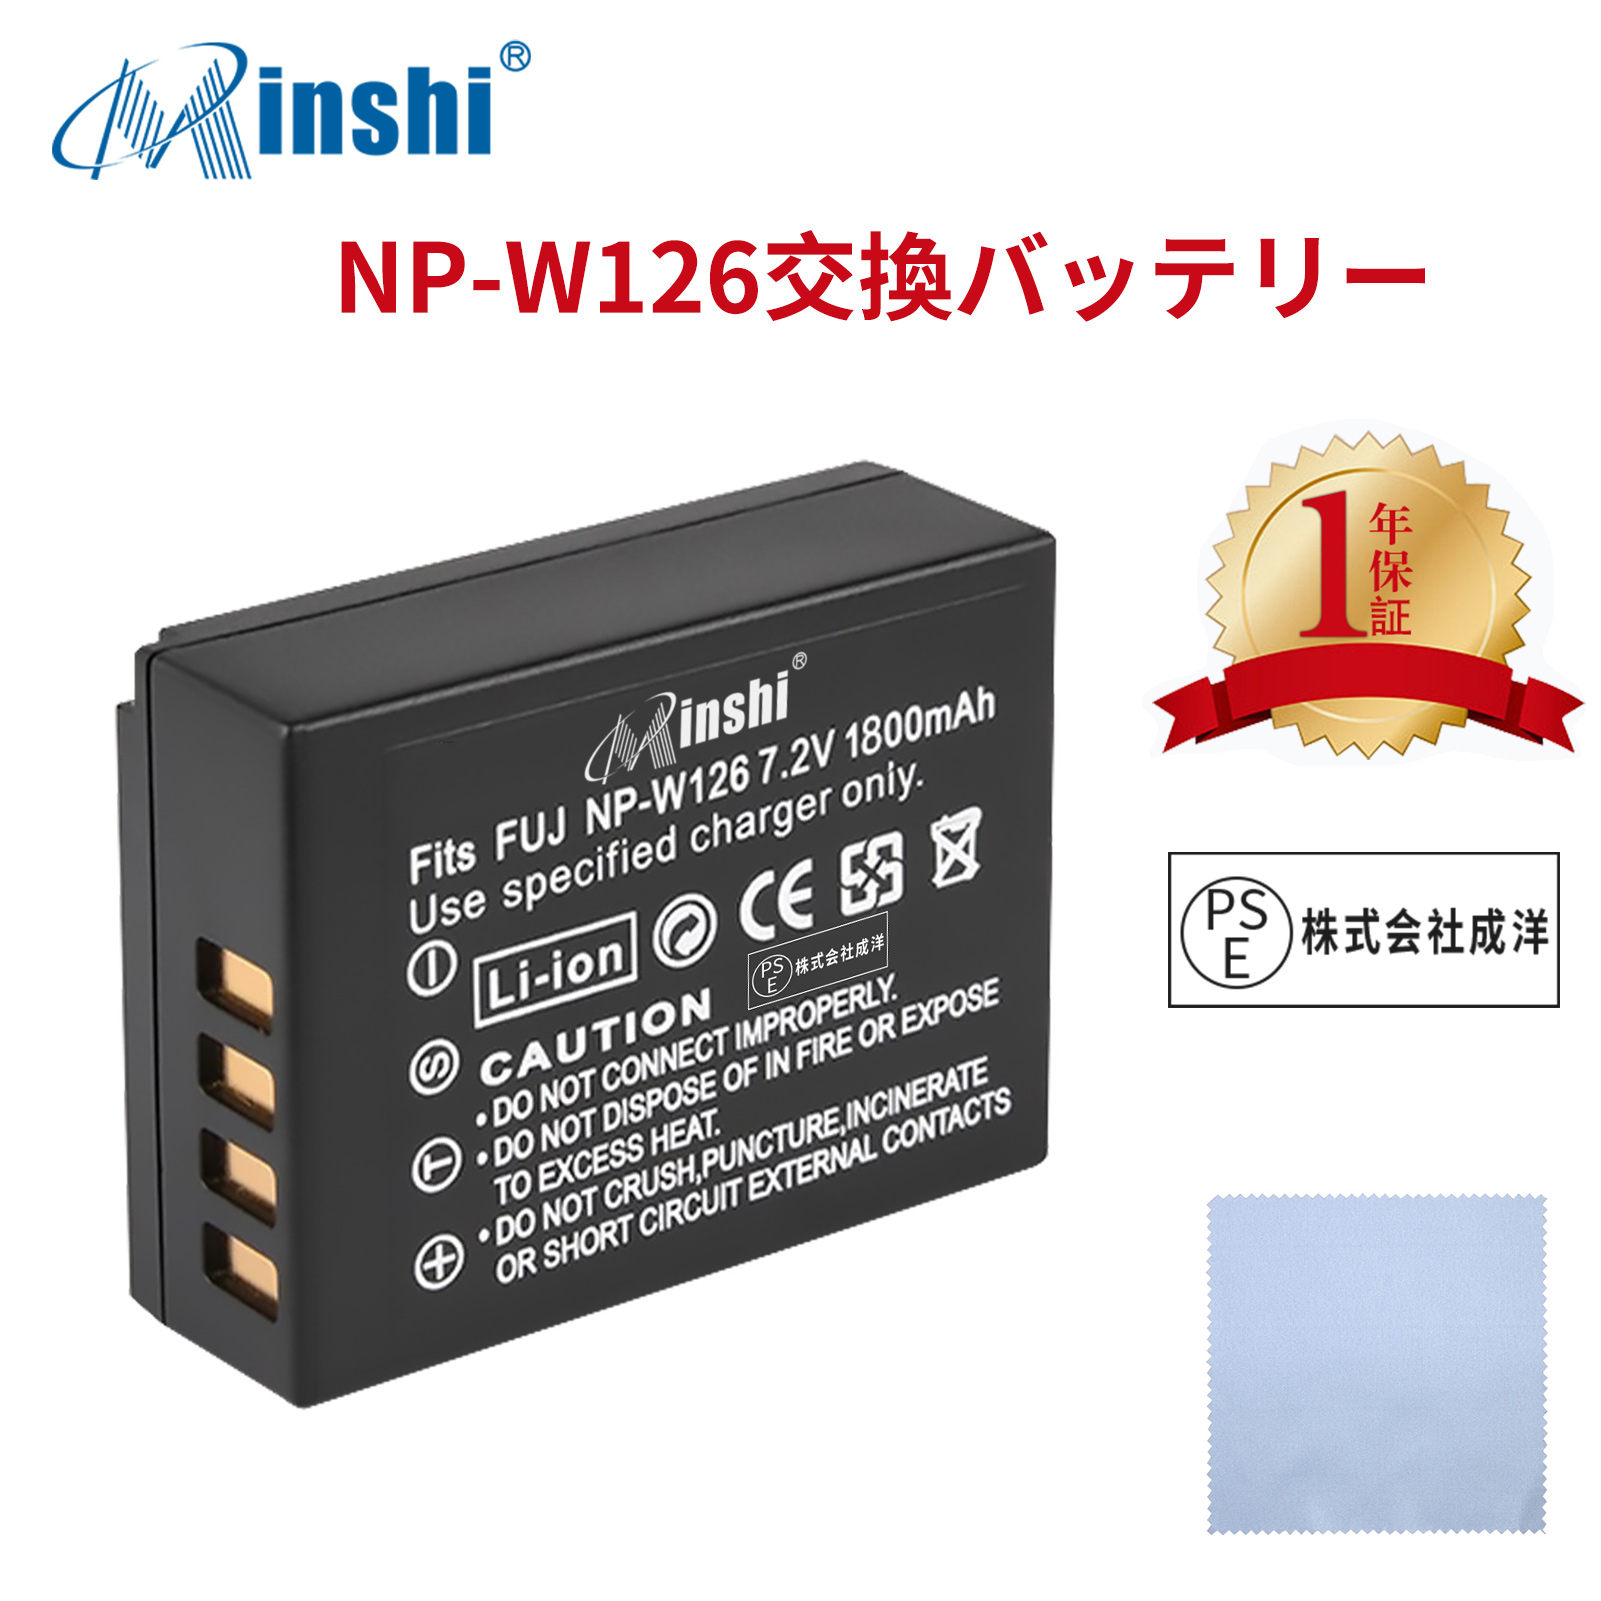 【クロス付き】minshi FUJIFILM X-T200 NP-W126S 【1800mAh 7.2V】 NP-W126 NP-W126S高品質 NP-W126S NP-W126互換バッテリー